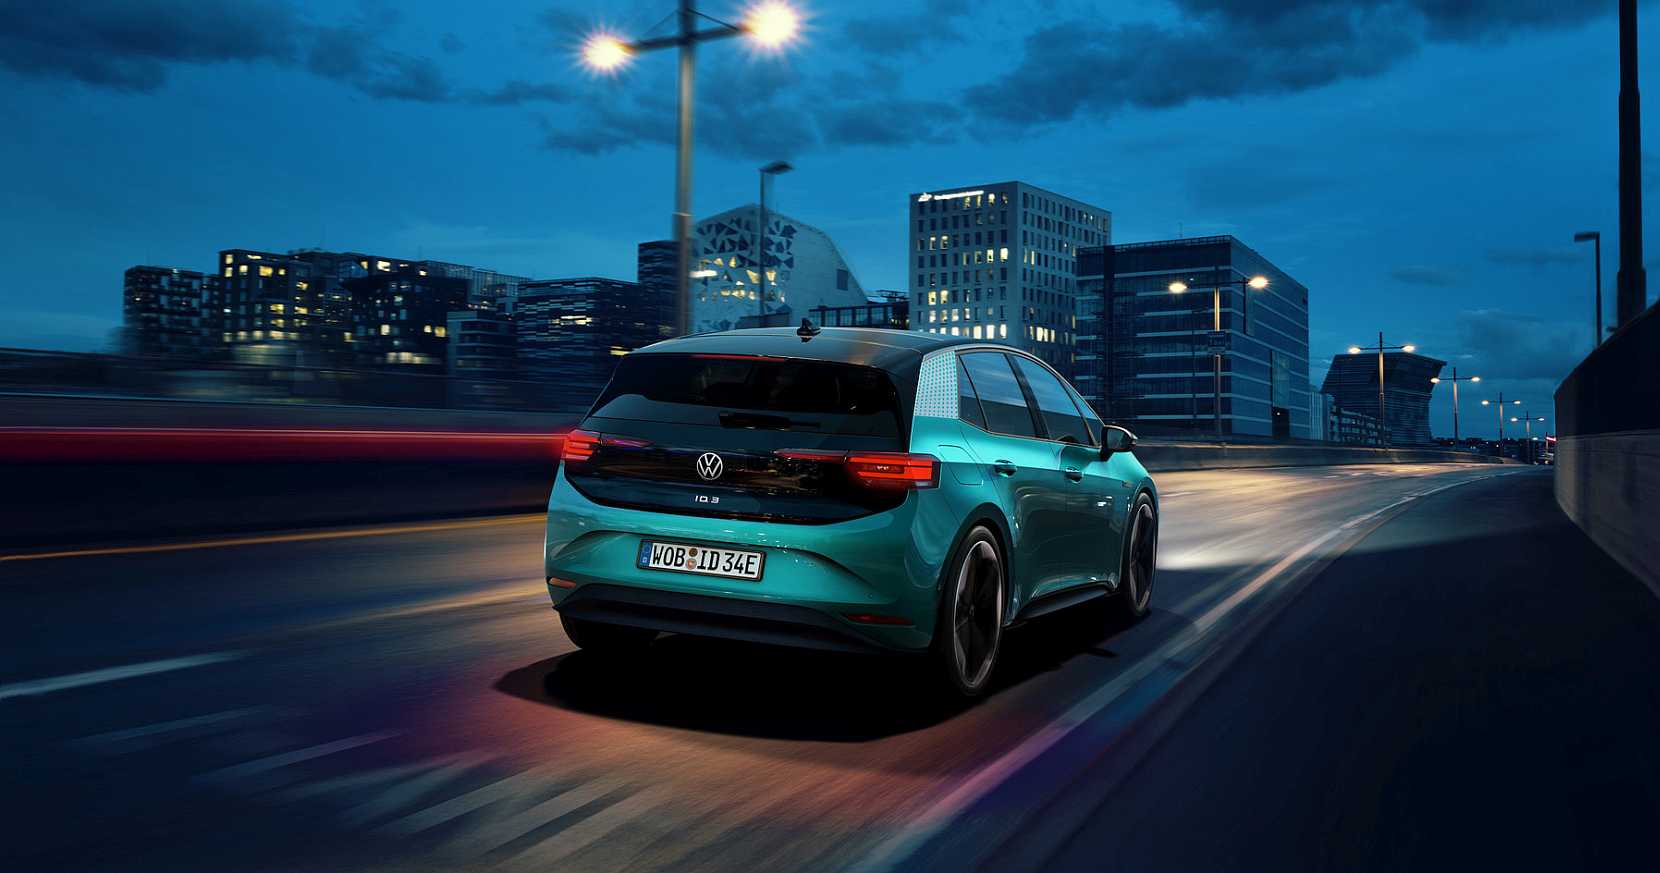 Innovationsprämie von bis zu 9.000 Euro für den VW ID.3